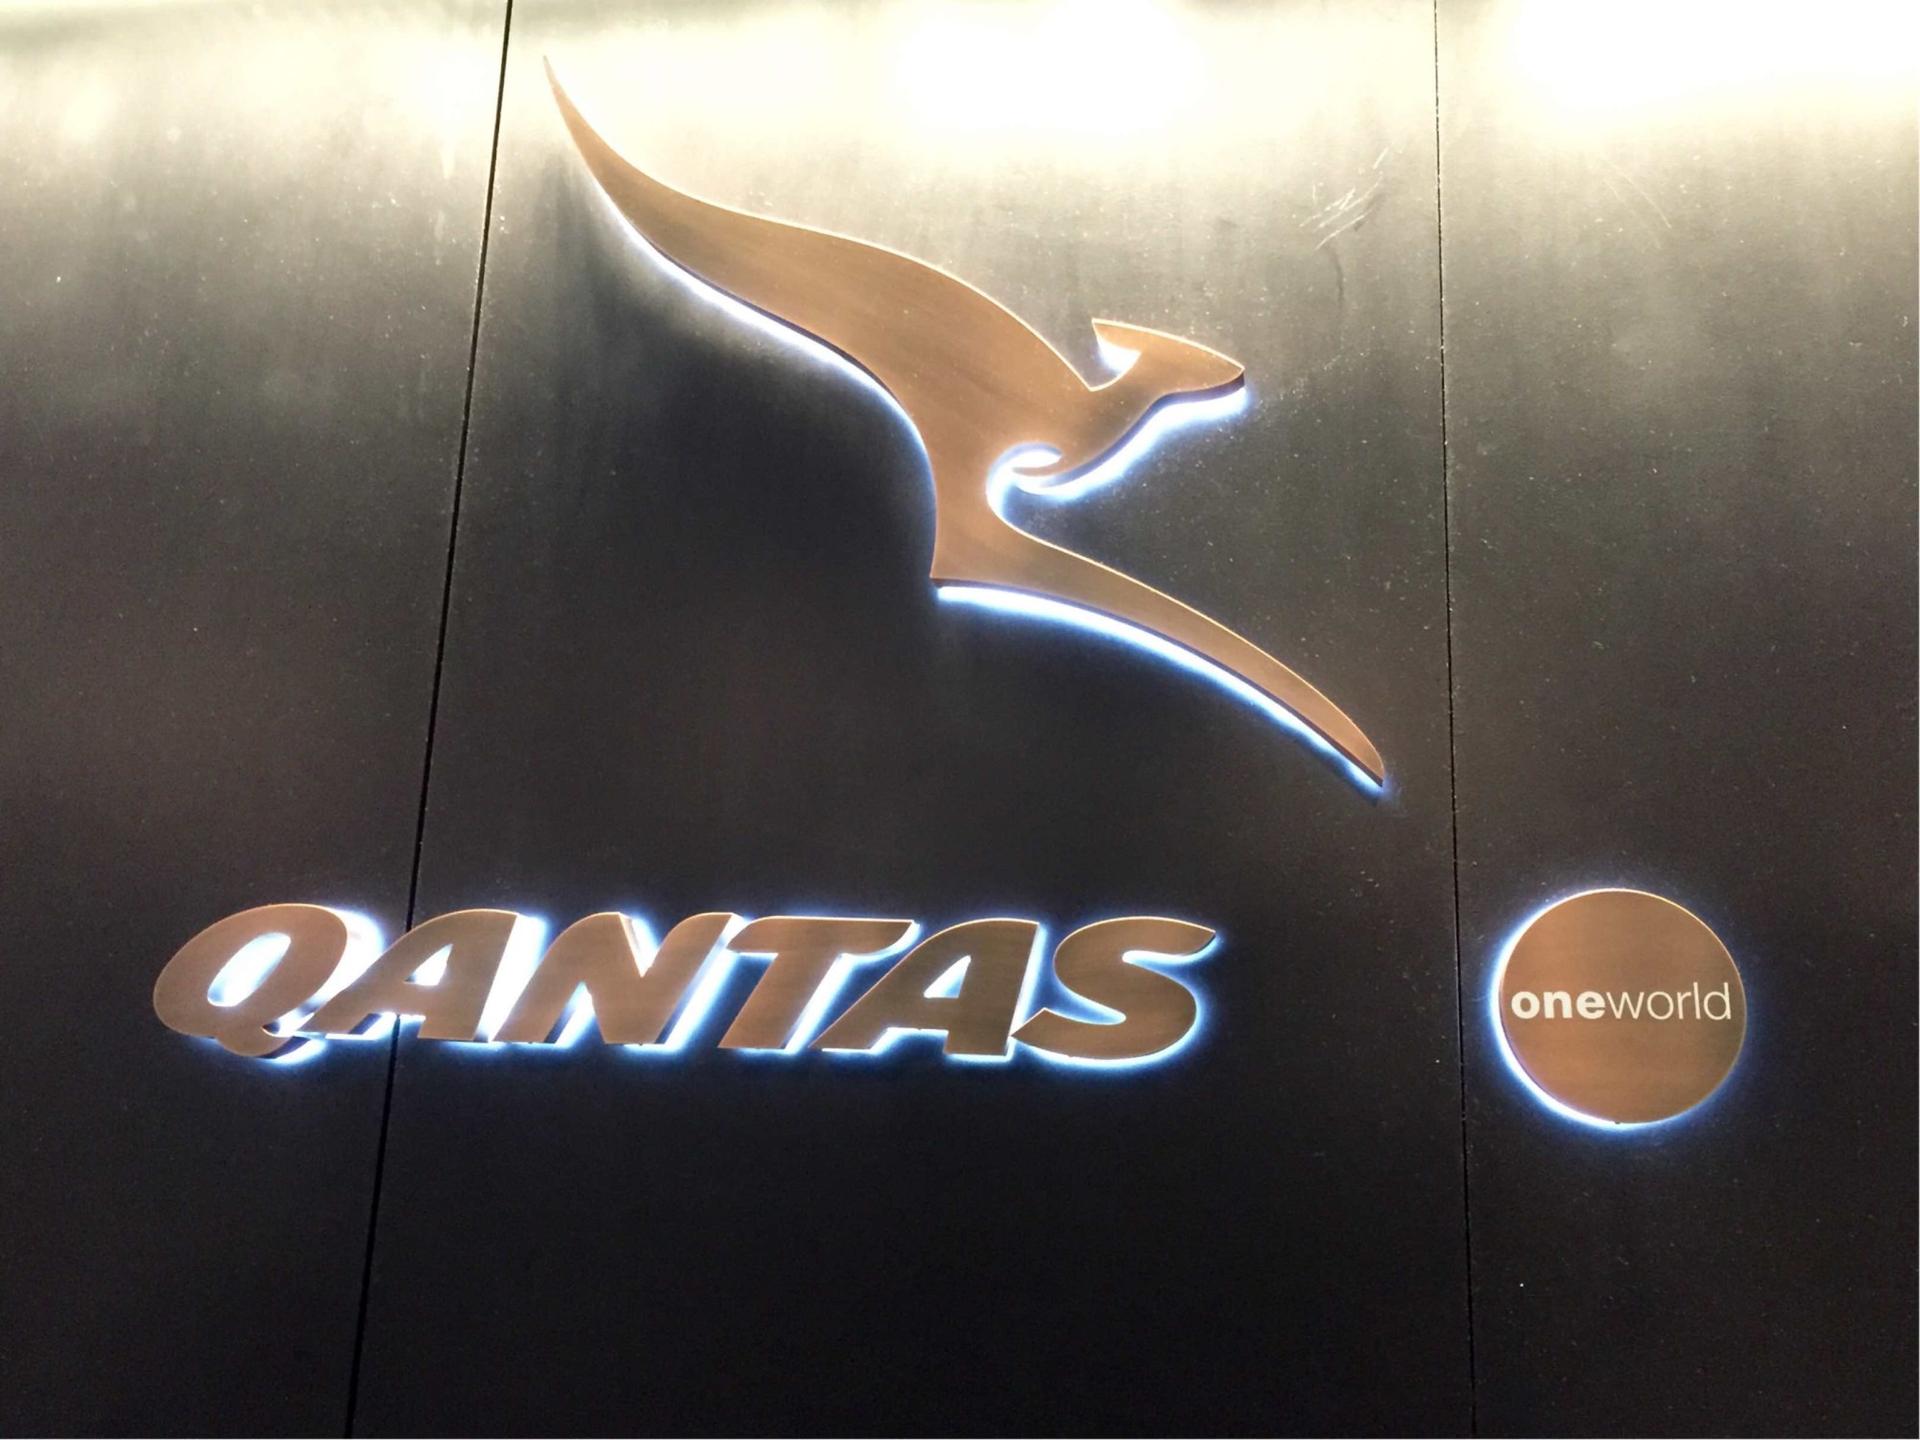 The Qantas Hong Kong Lounge image 46 of 99